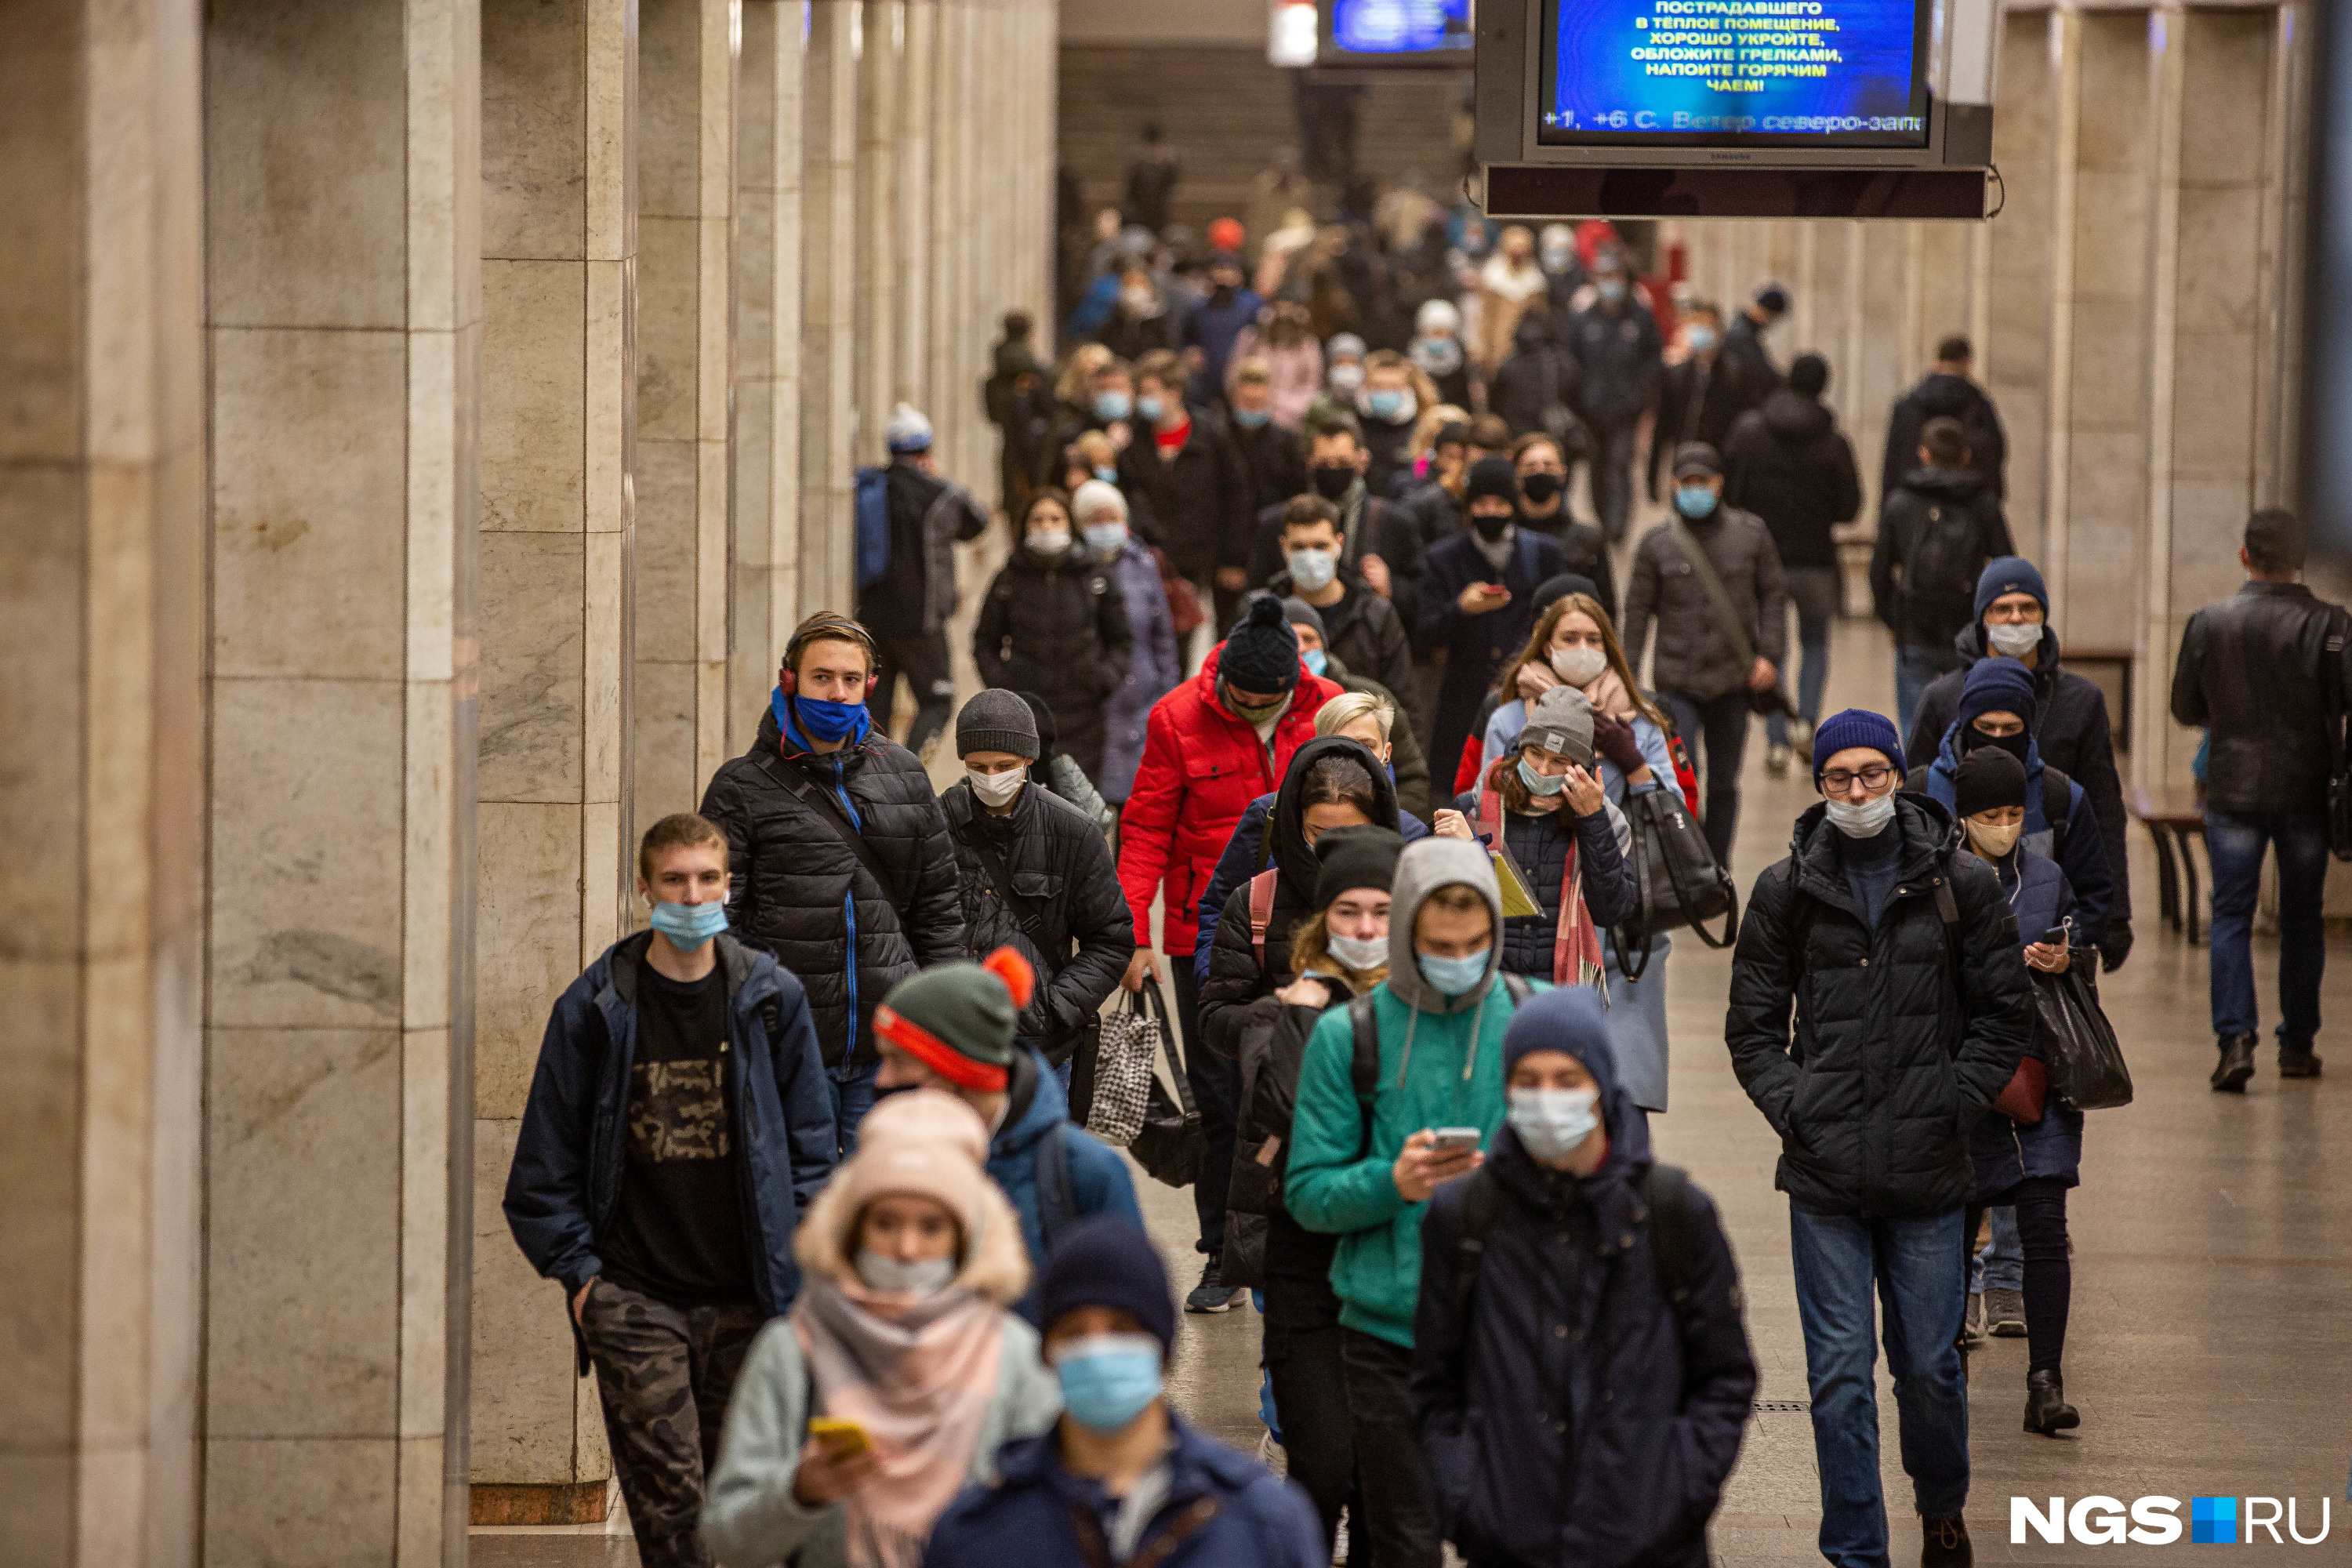 Толпа в метро в масках